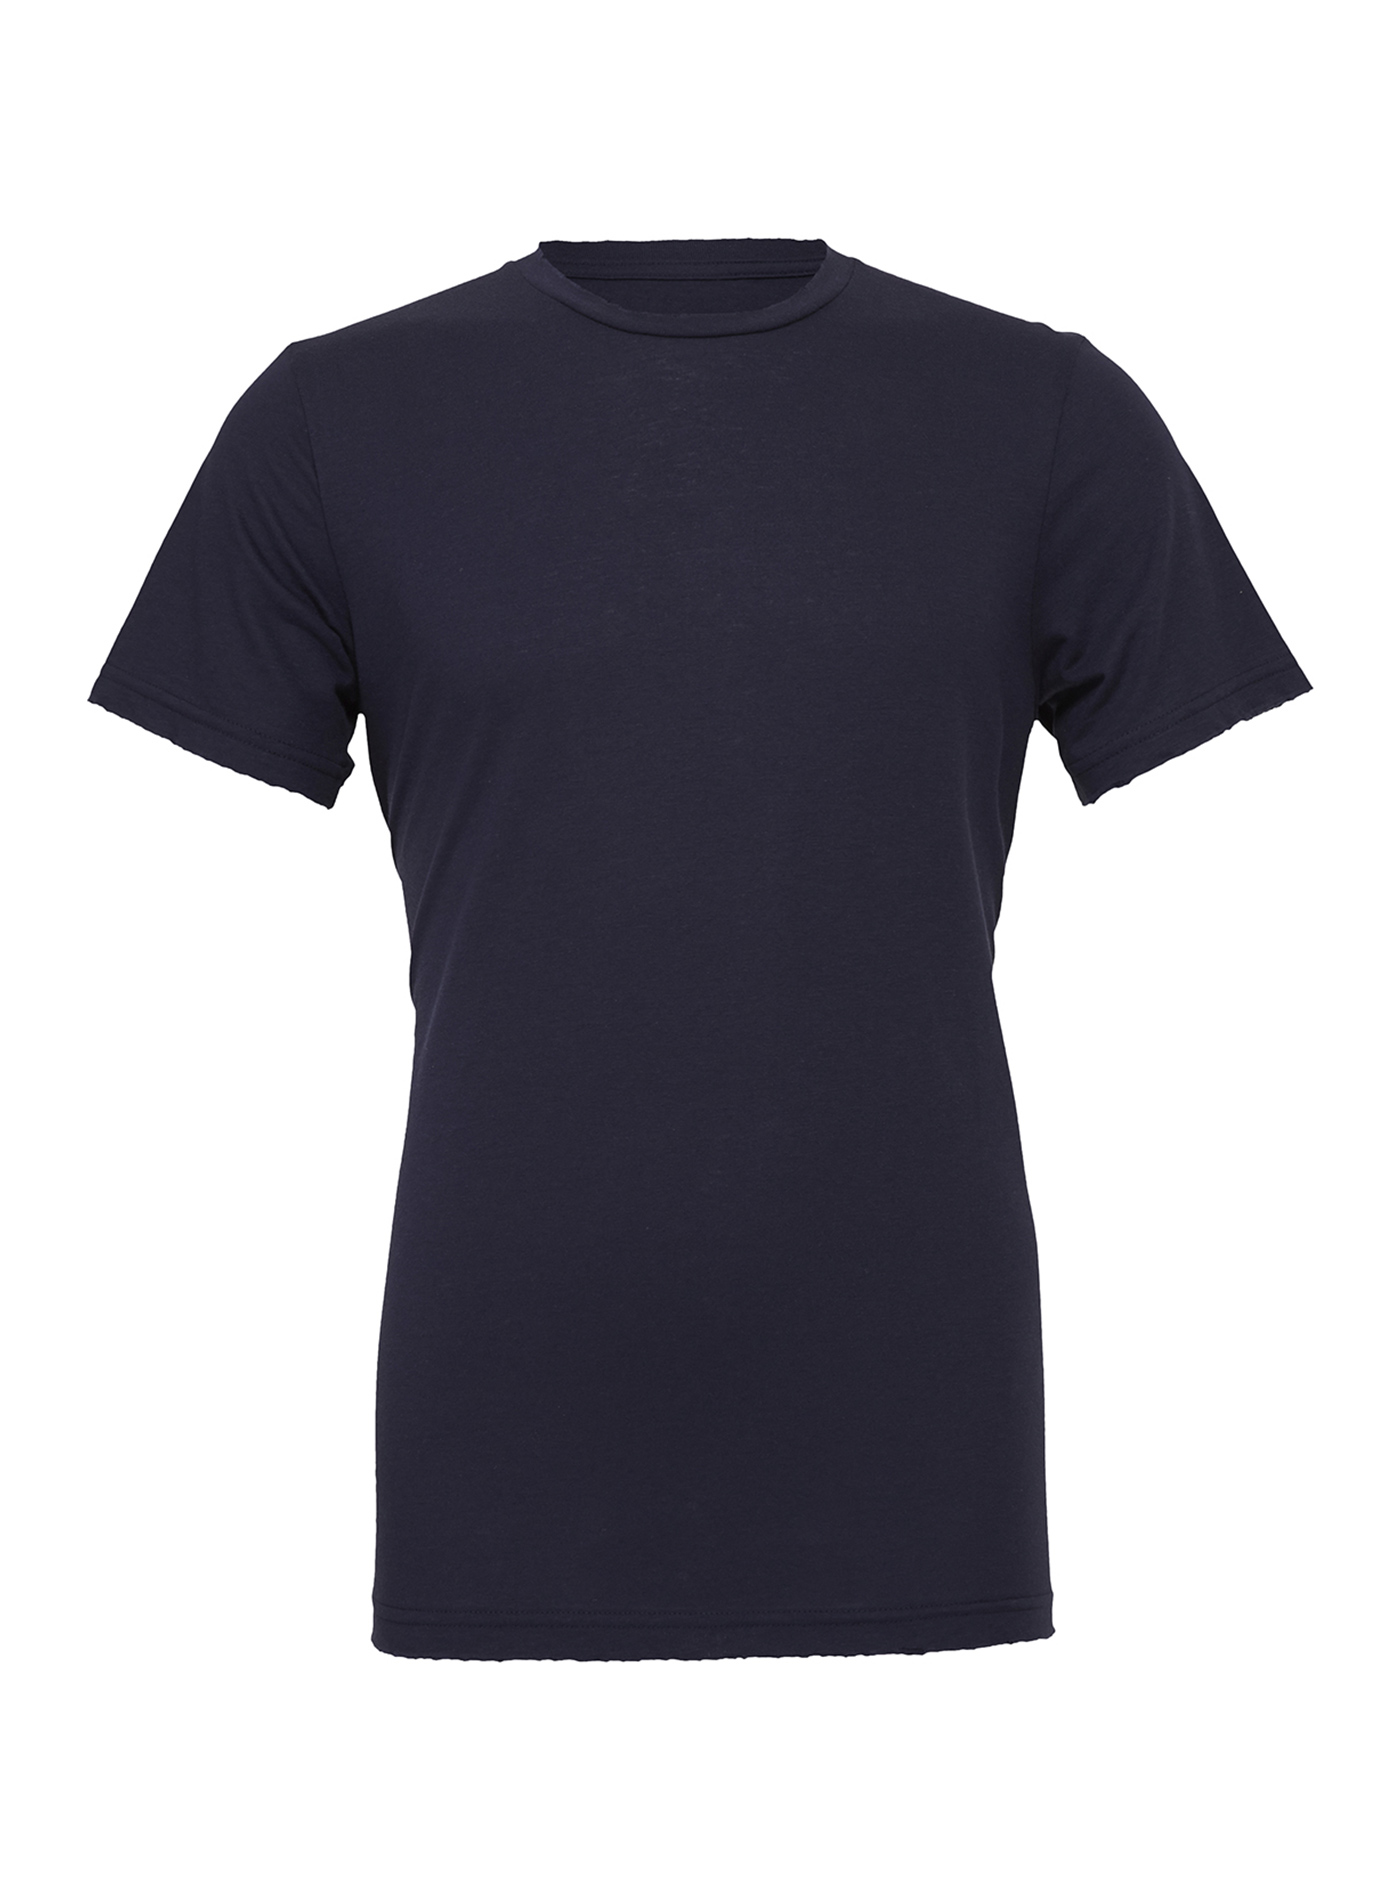 Unisex tričko Bella + Canvas Jersey - tmavě modrá S